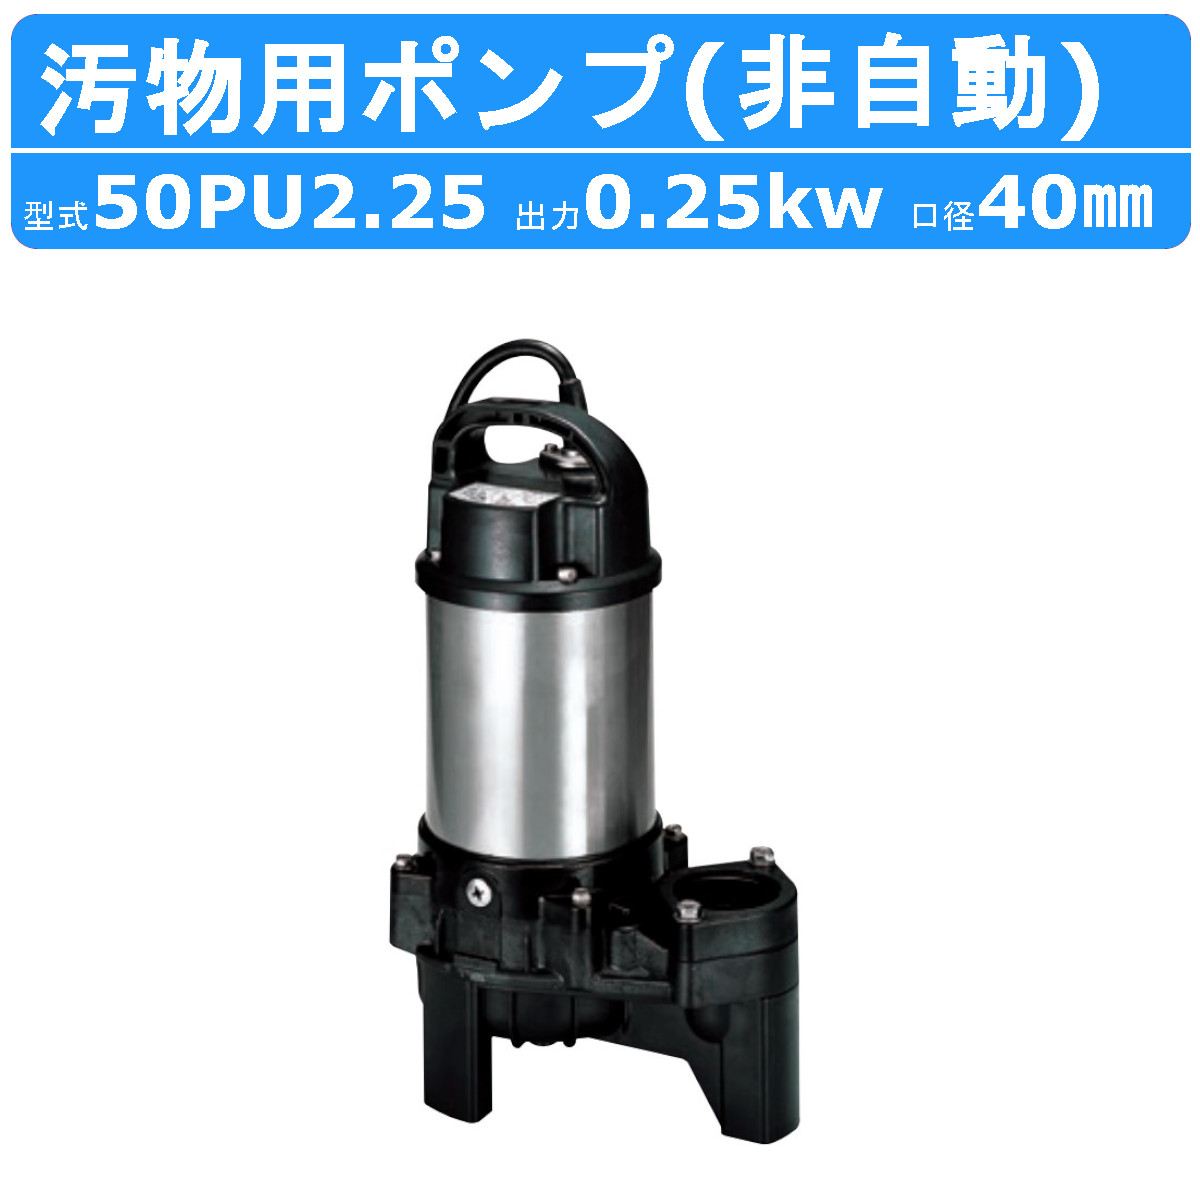 ツルミ 汚物用 水中ポンプ 50PU2.25 バンクスシリーズ 浄化槽用 三相